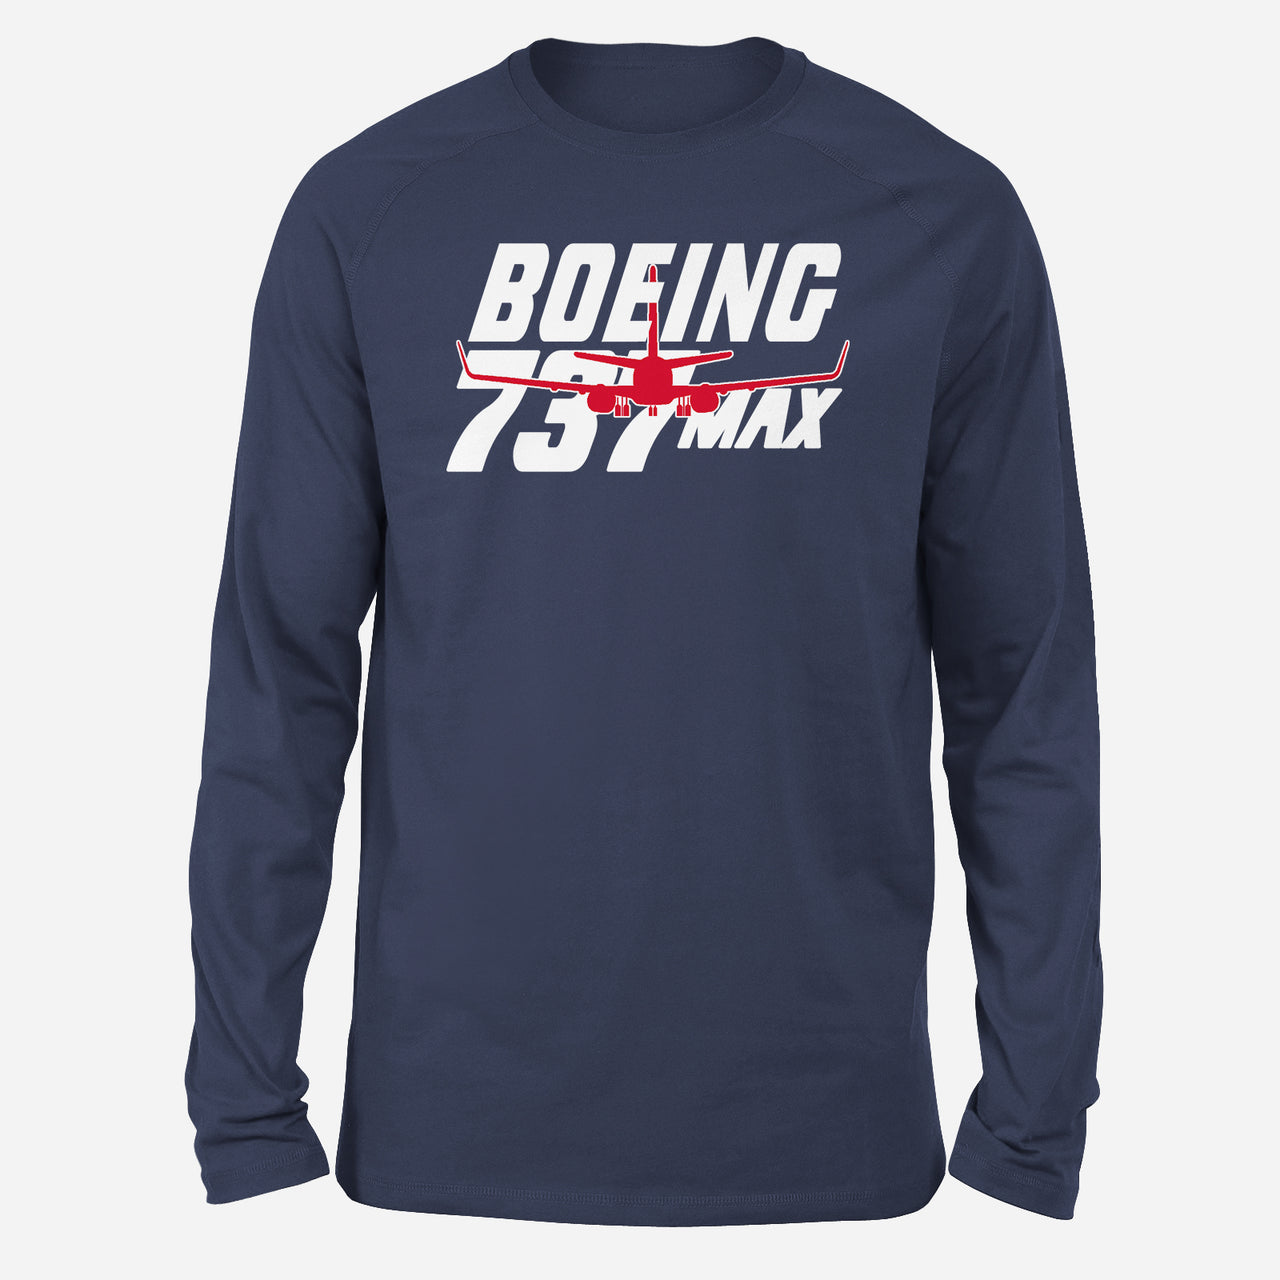 Amazing Boeing 737 Max Designed Long-Sleeve T-Shirts